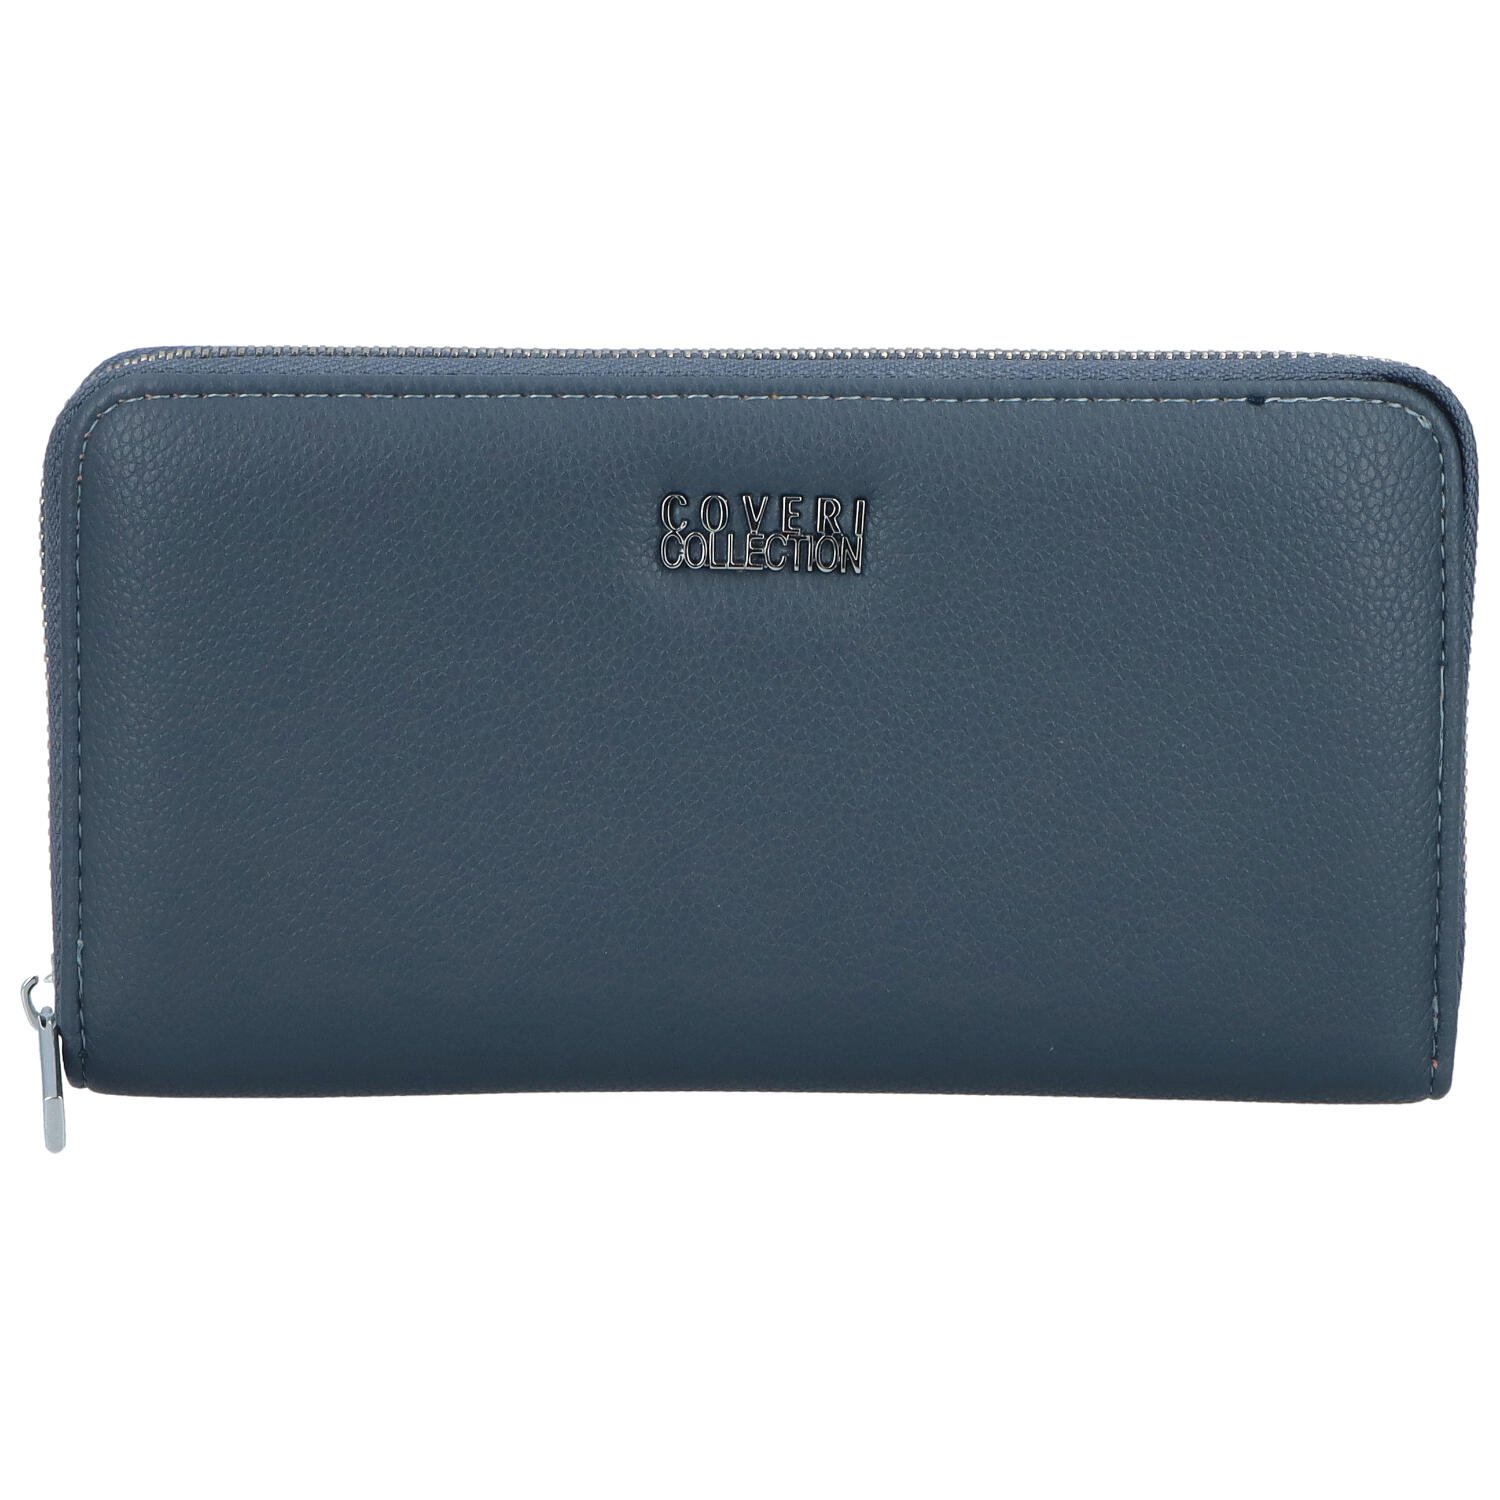 Dámská peněženka bledě modrá - Coveri CW51